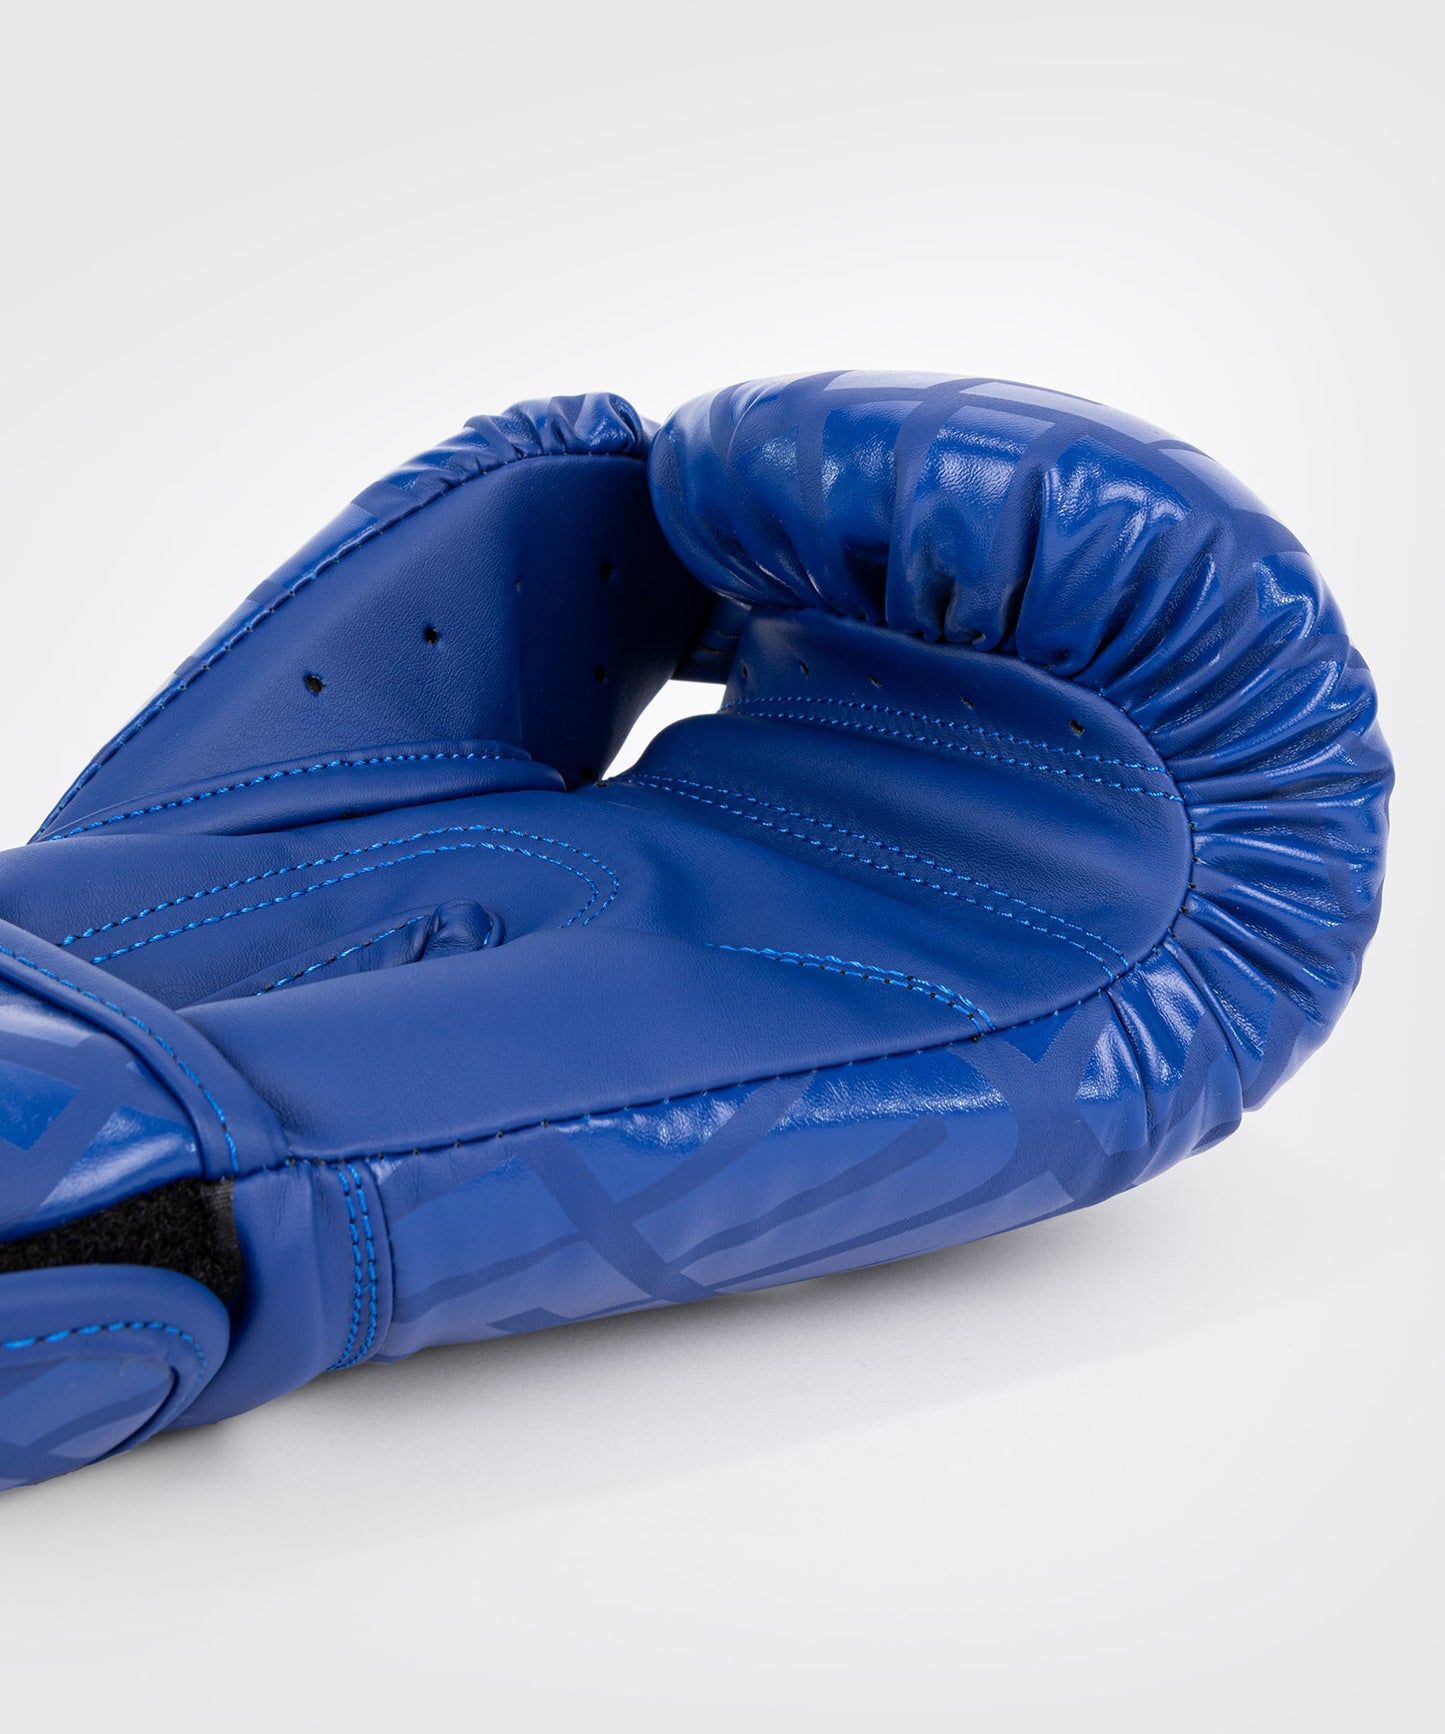 Venum Contender 1.5 XT Boxhandschuhe - Weiß/Blau